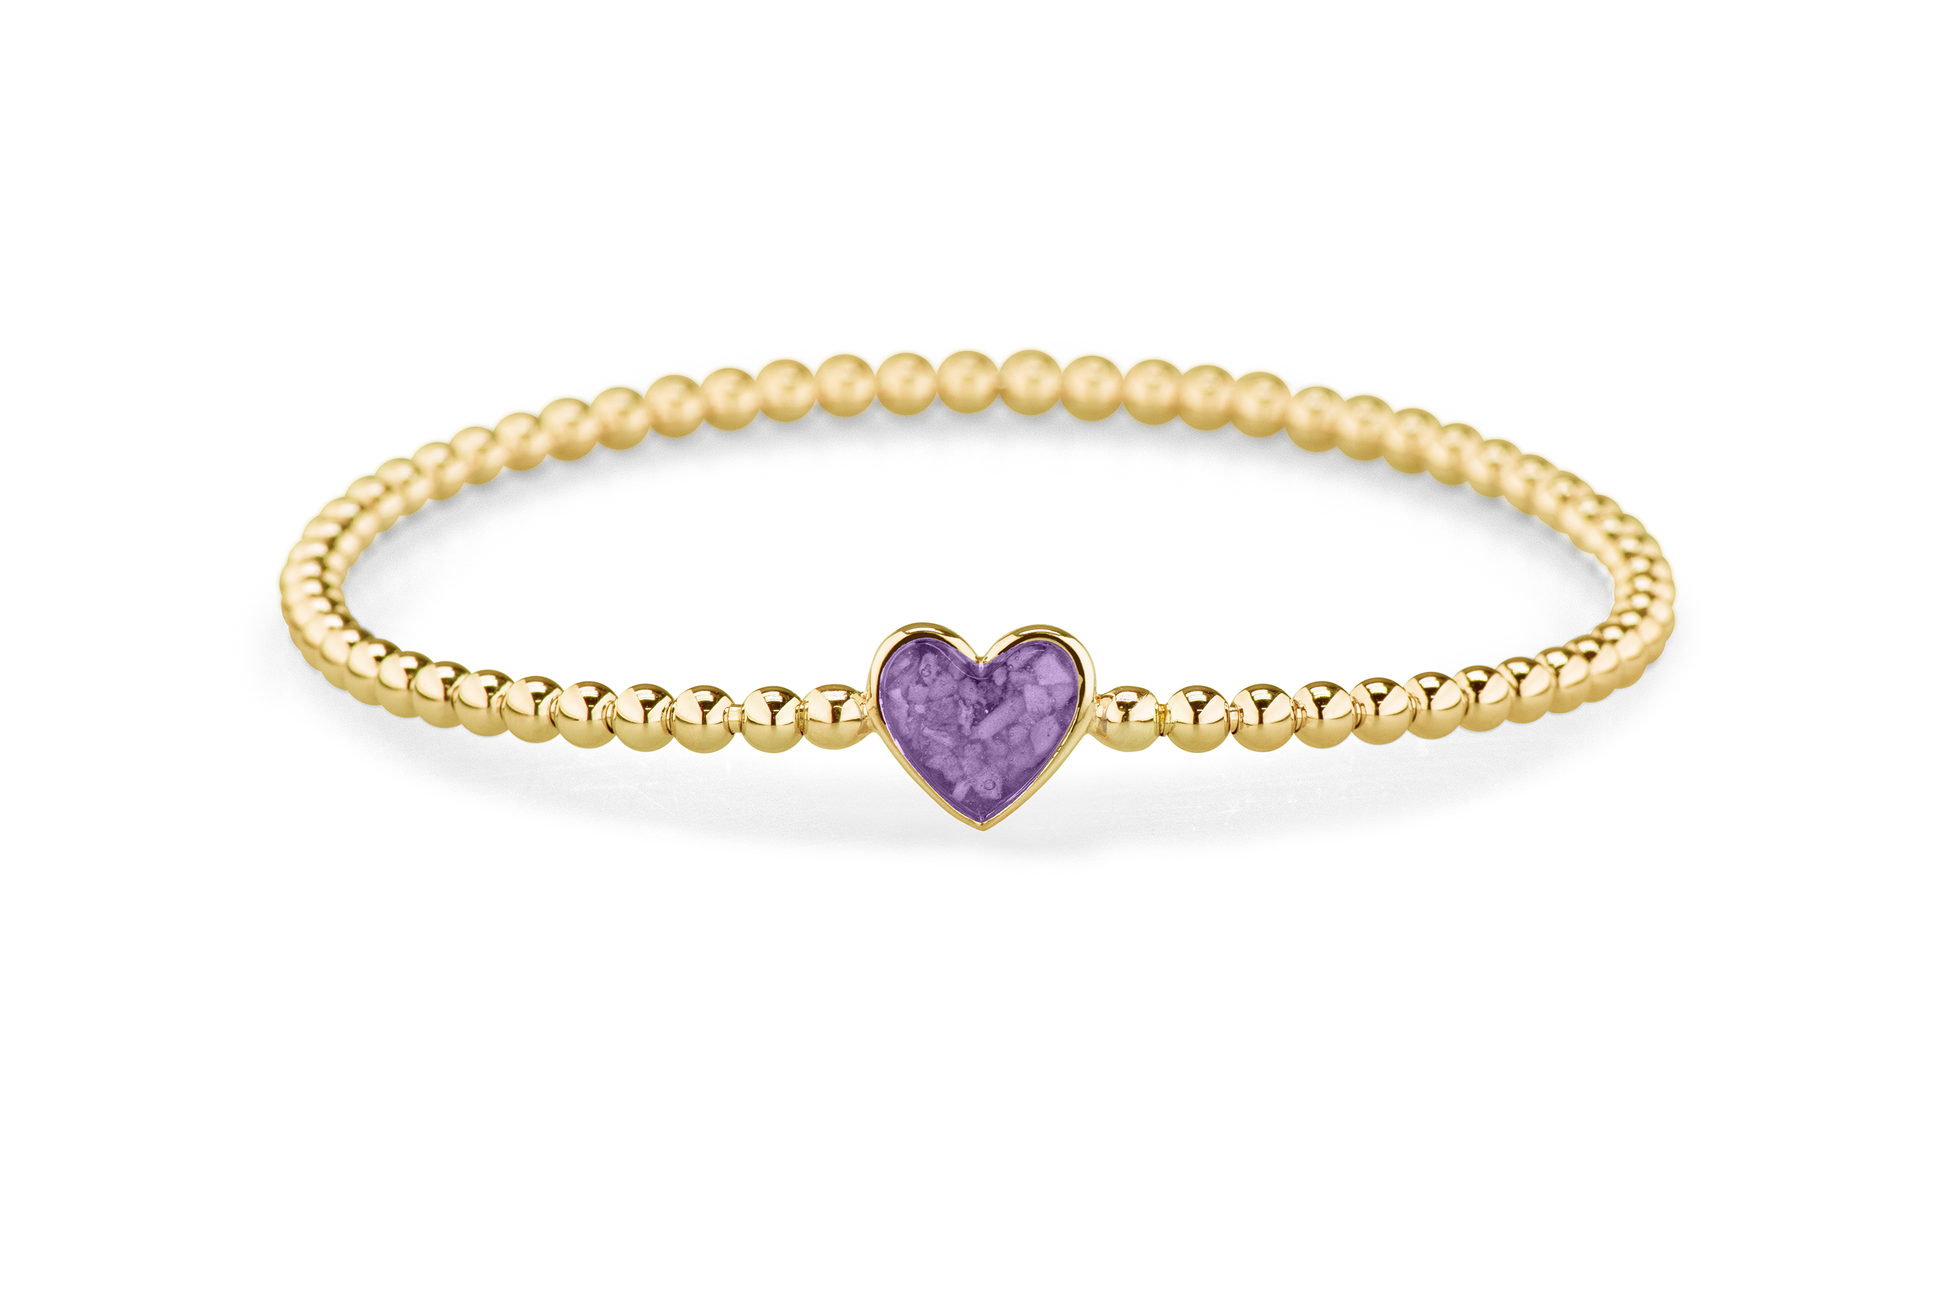 Flexibele as armband met hart als compartiment voor as of haar, gedenksieraden. Purple